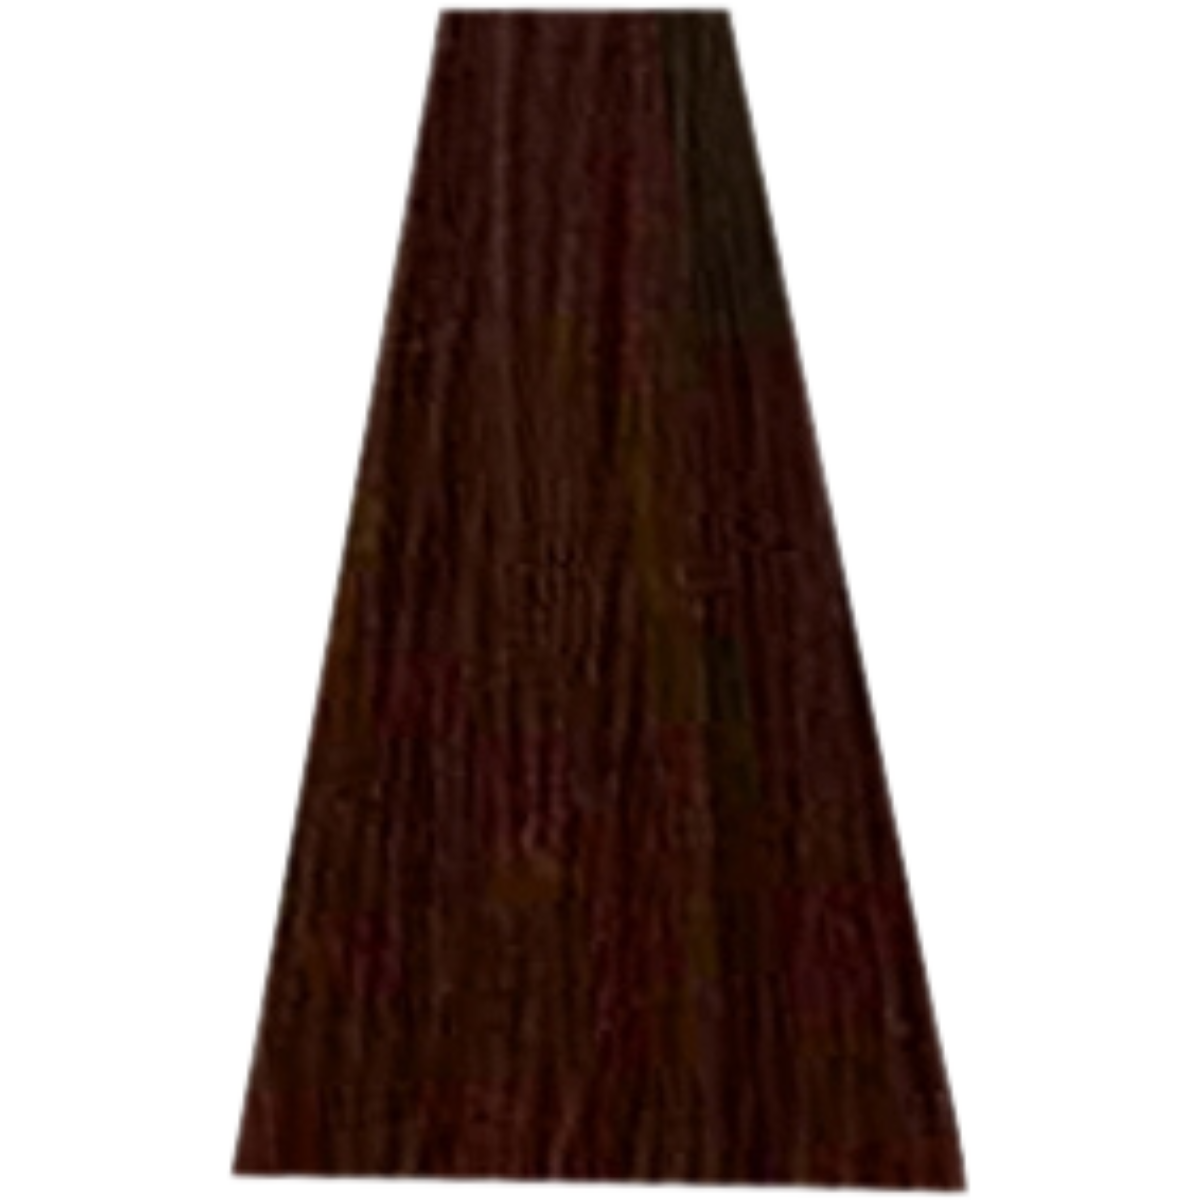 צבע שיער 7.8 MOCHA BLONDE דיה לייט לוריאל DIA LIGHT LOREAL צבע שטיפה לשיער 50 מ"ל